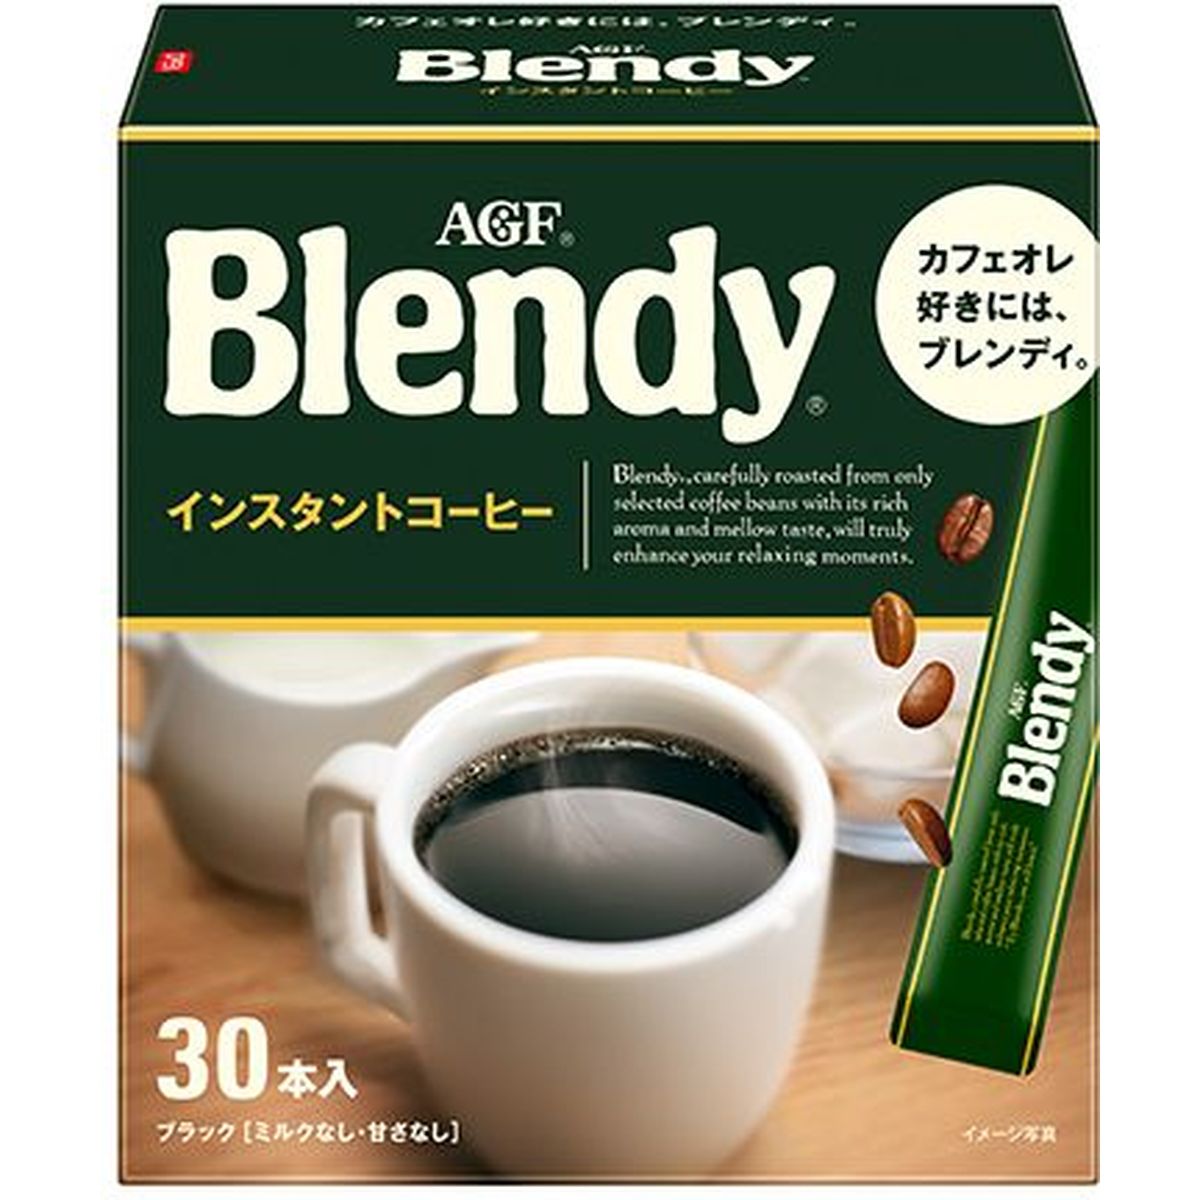 【3個入リ】AGF ブレンディ インスタントコーヒー パーソナル 30本